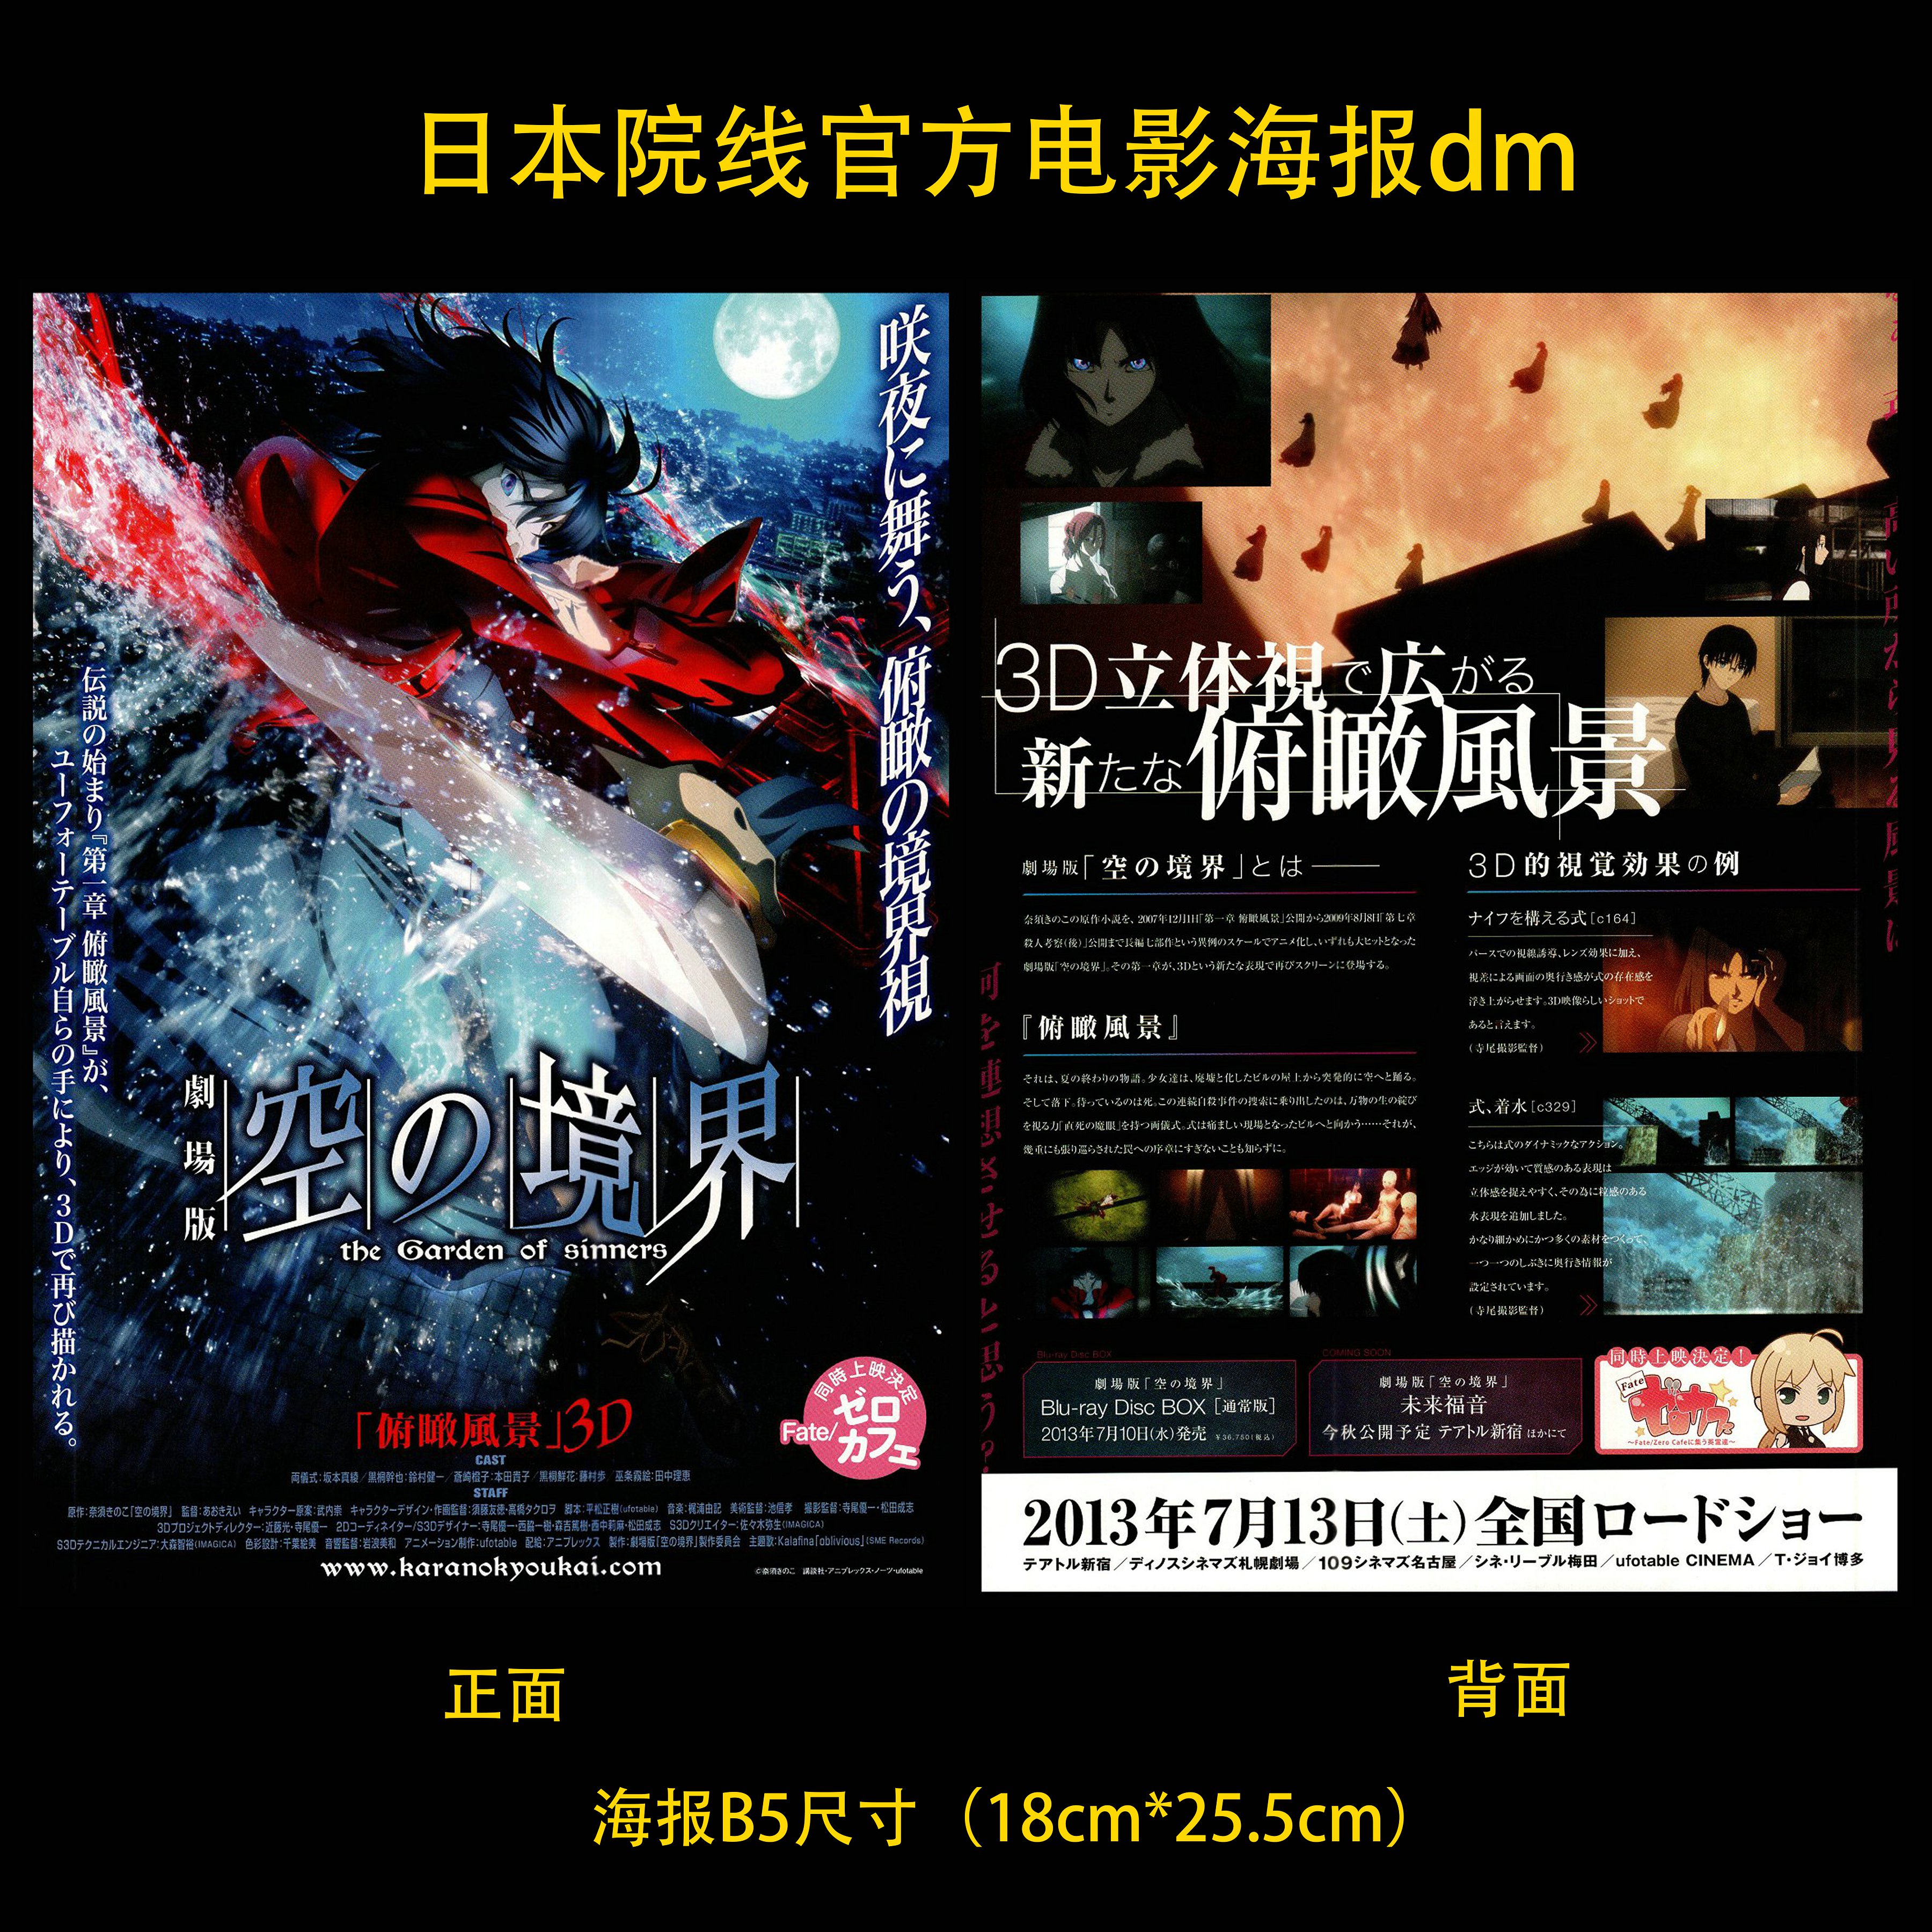 空之境界 俯瞰风景3D 日本院线宣传官方原版海报dm 2013年